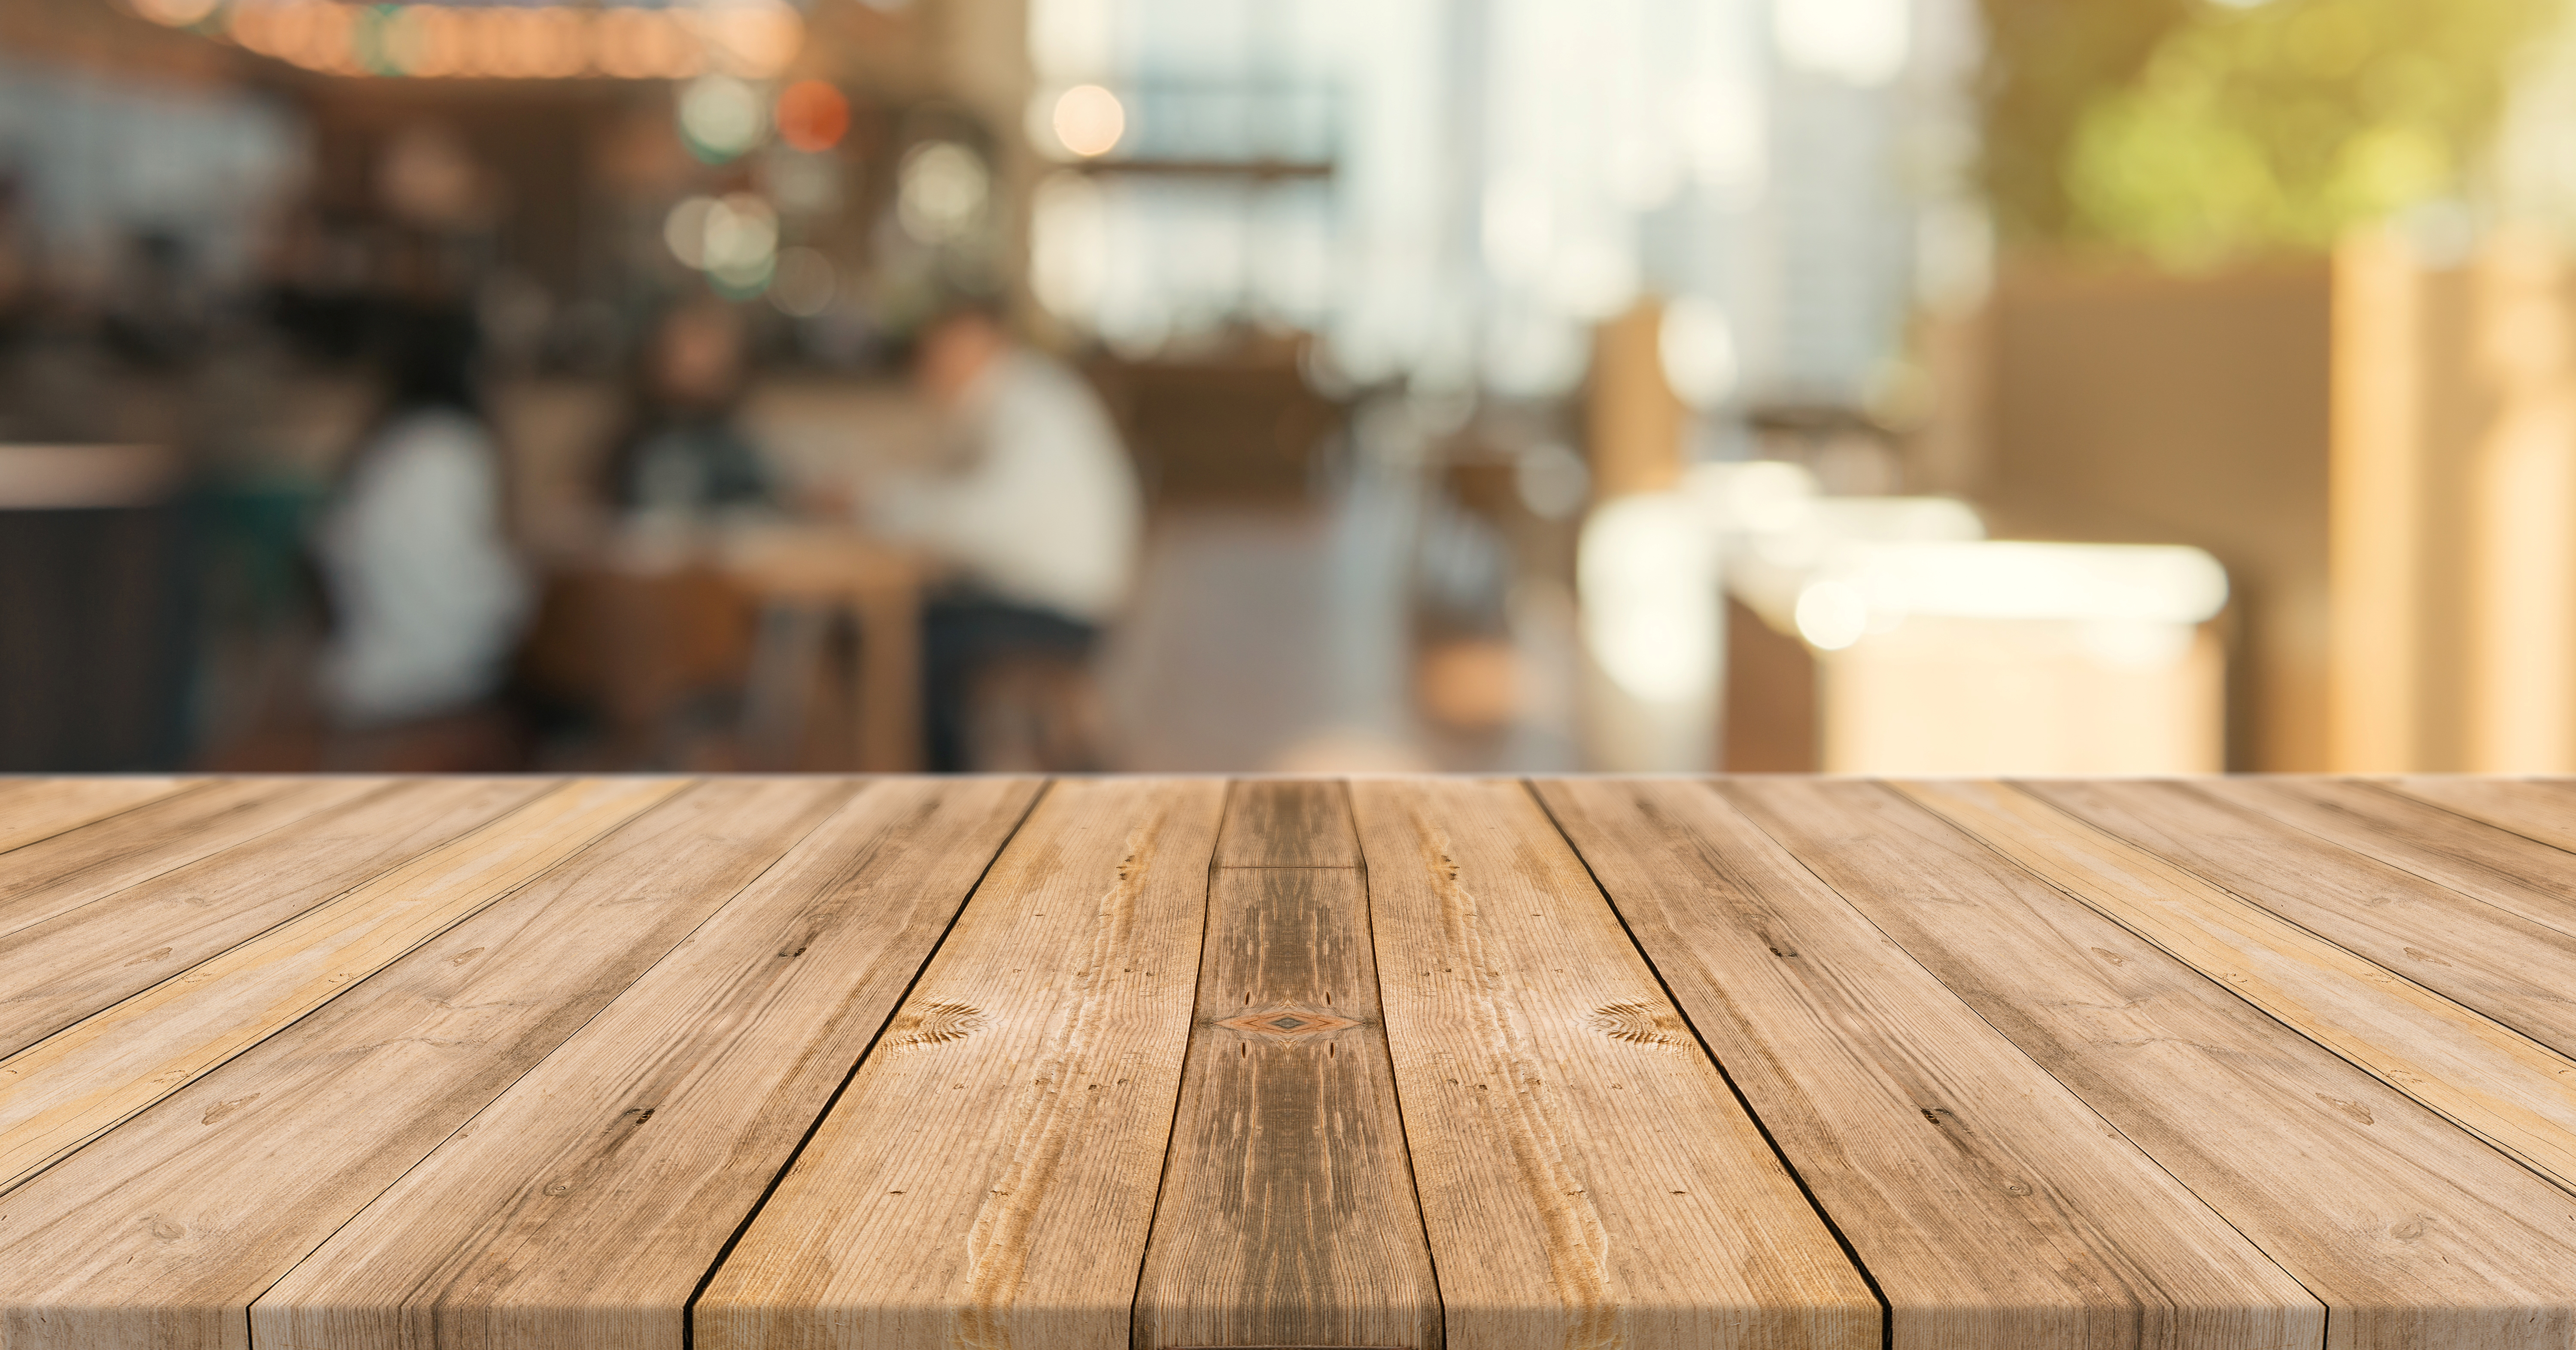 Гладкий край стола. Поверхность стола. Деревянная поверхность стола. Стол деревянный. Деревянный стол фон.